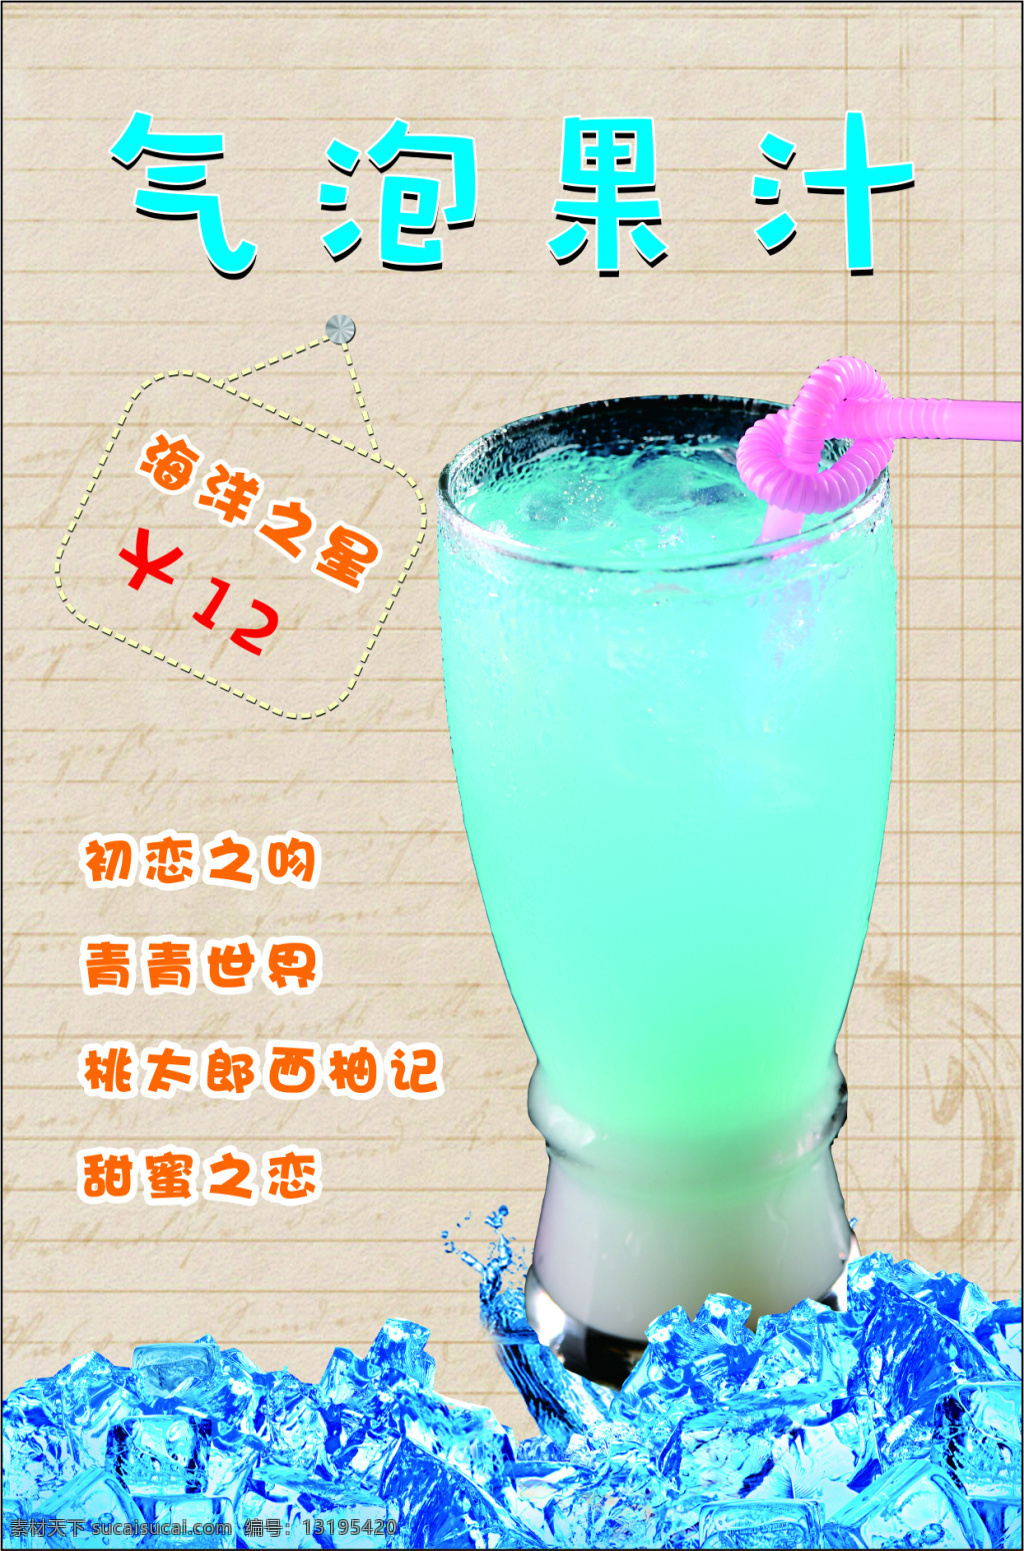 气泡果汁展板 果汁 果汁店海报 kt板饮料 果汁广告 果汁展板 夏季冰爽果汁 果汁设计模板